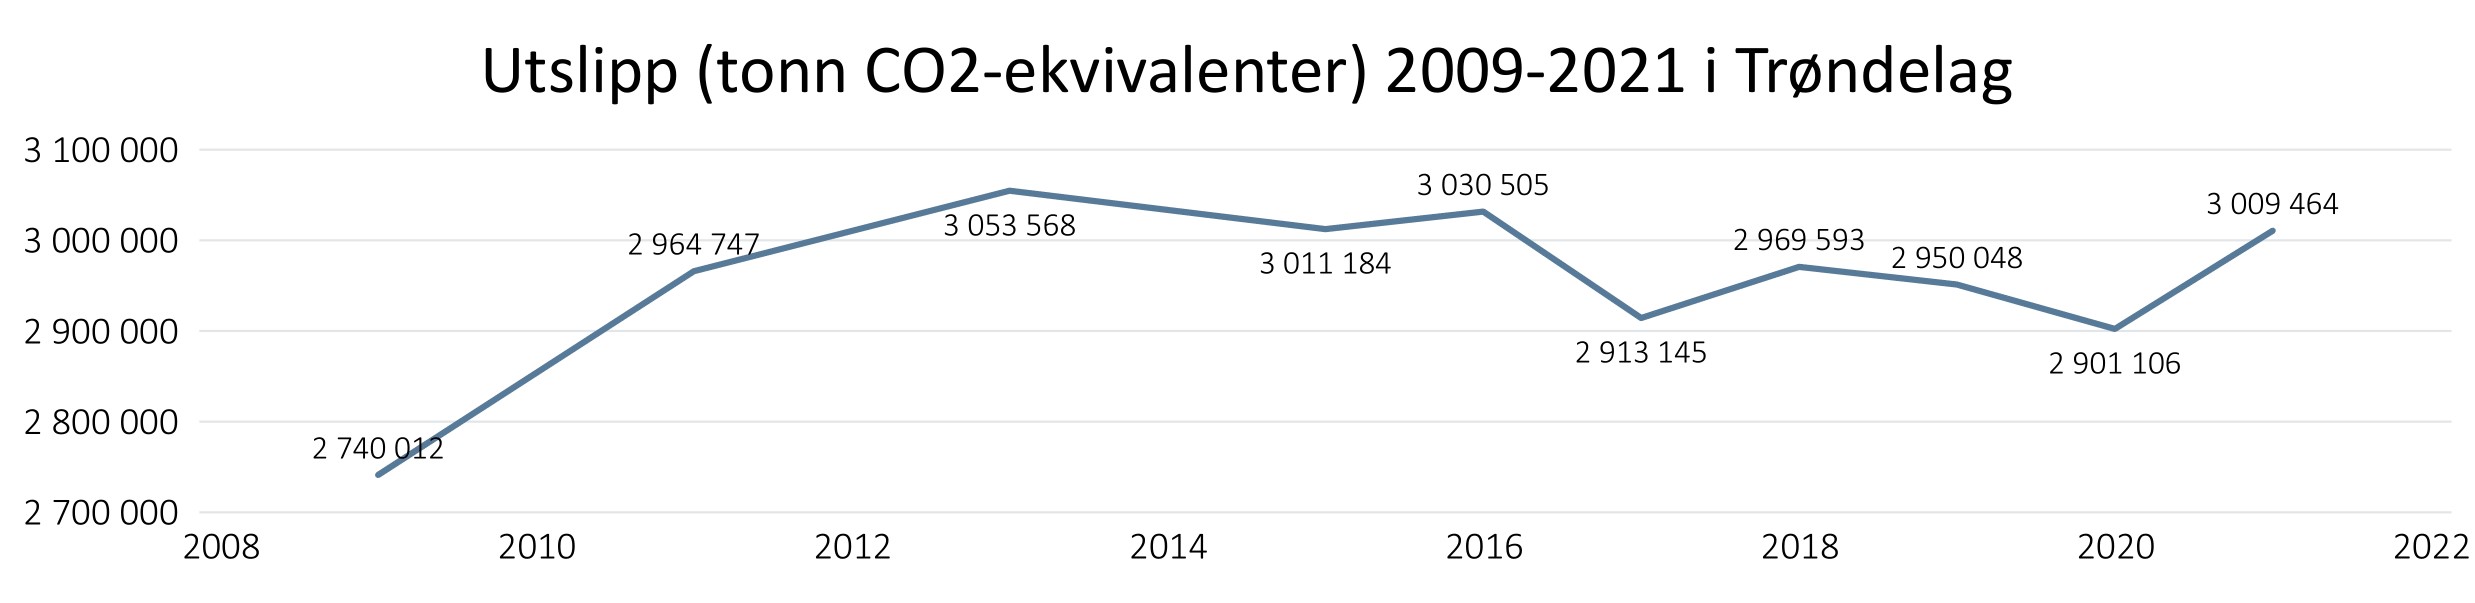 Utslippsstatistikk_Trøndelag 2009-2021